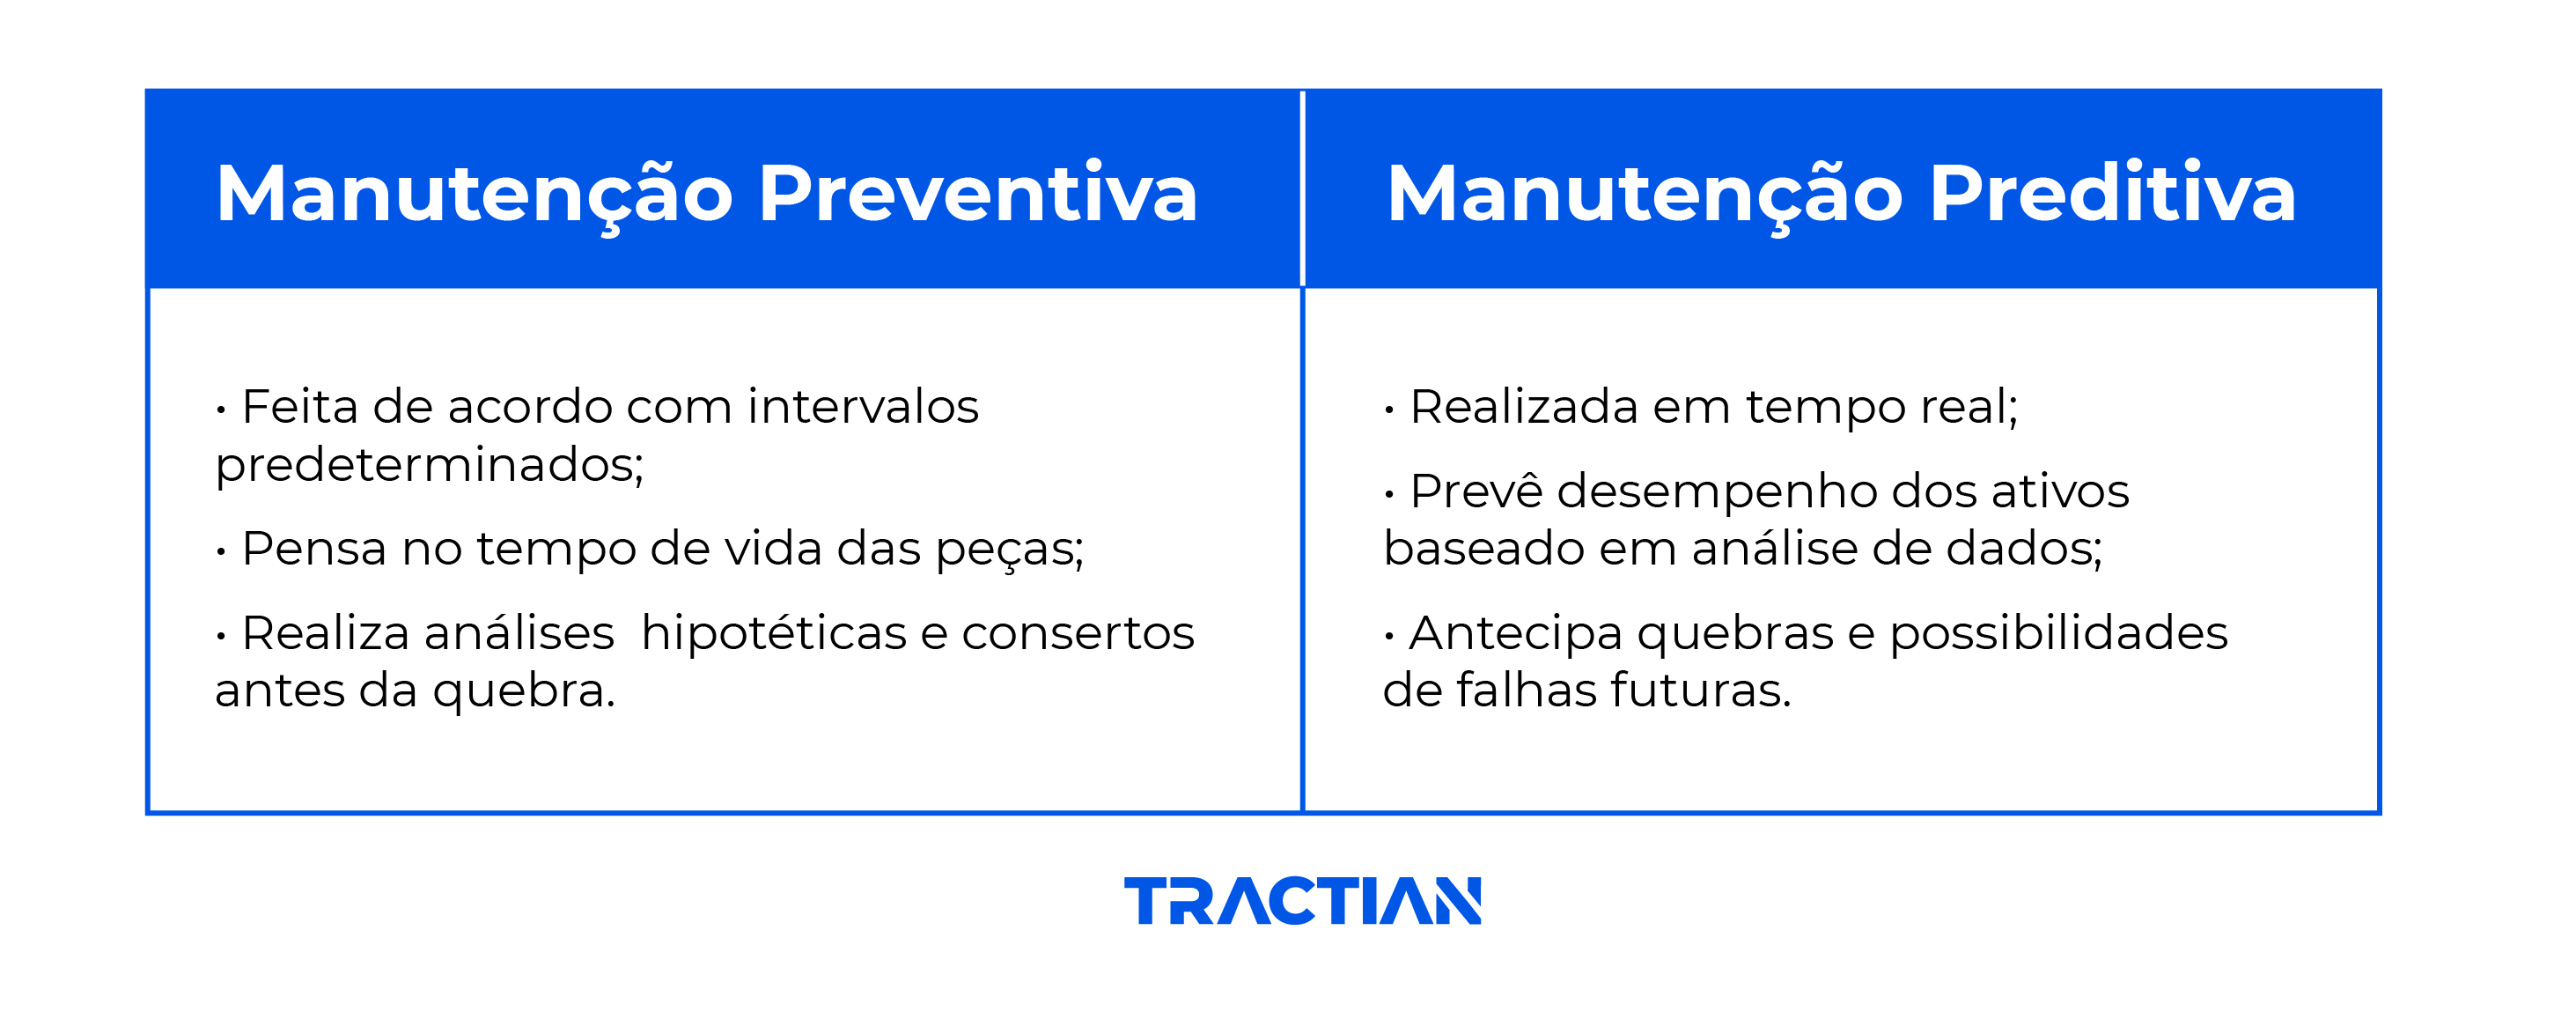 diferenças entre manutenção preventiva e preditiva